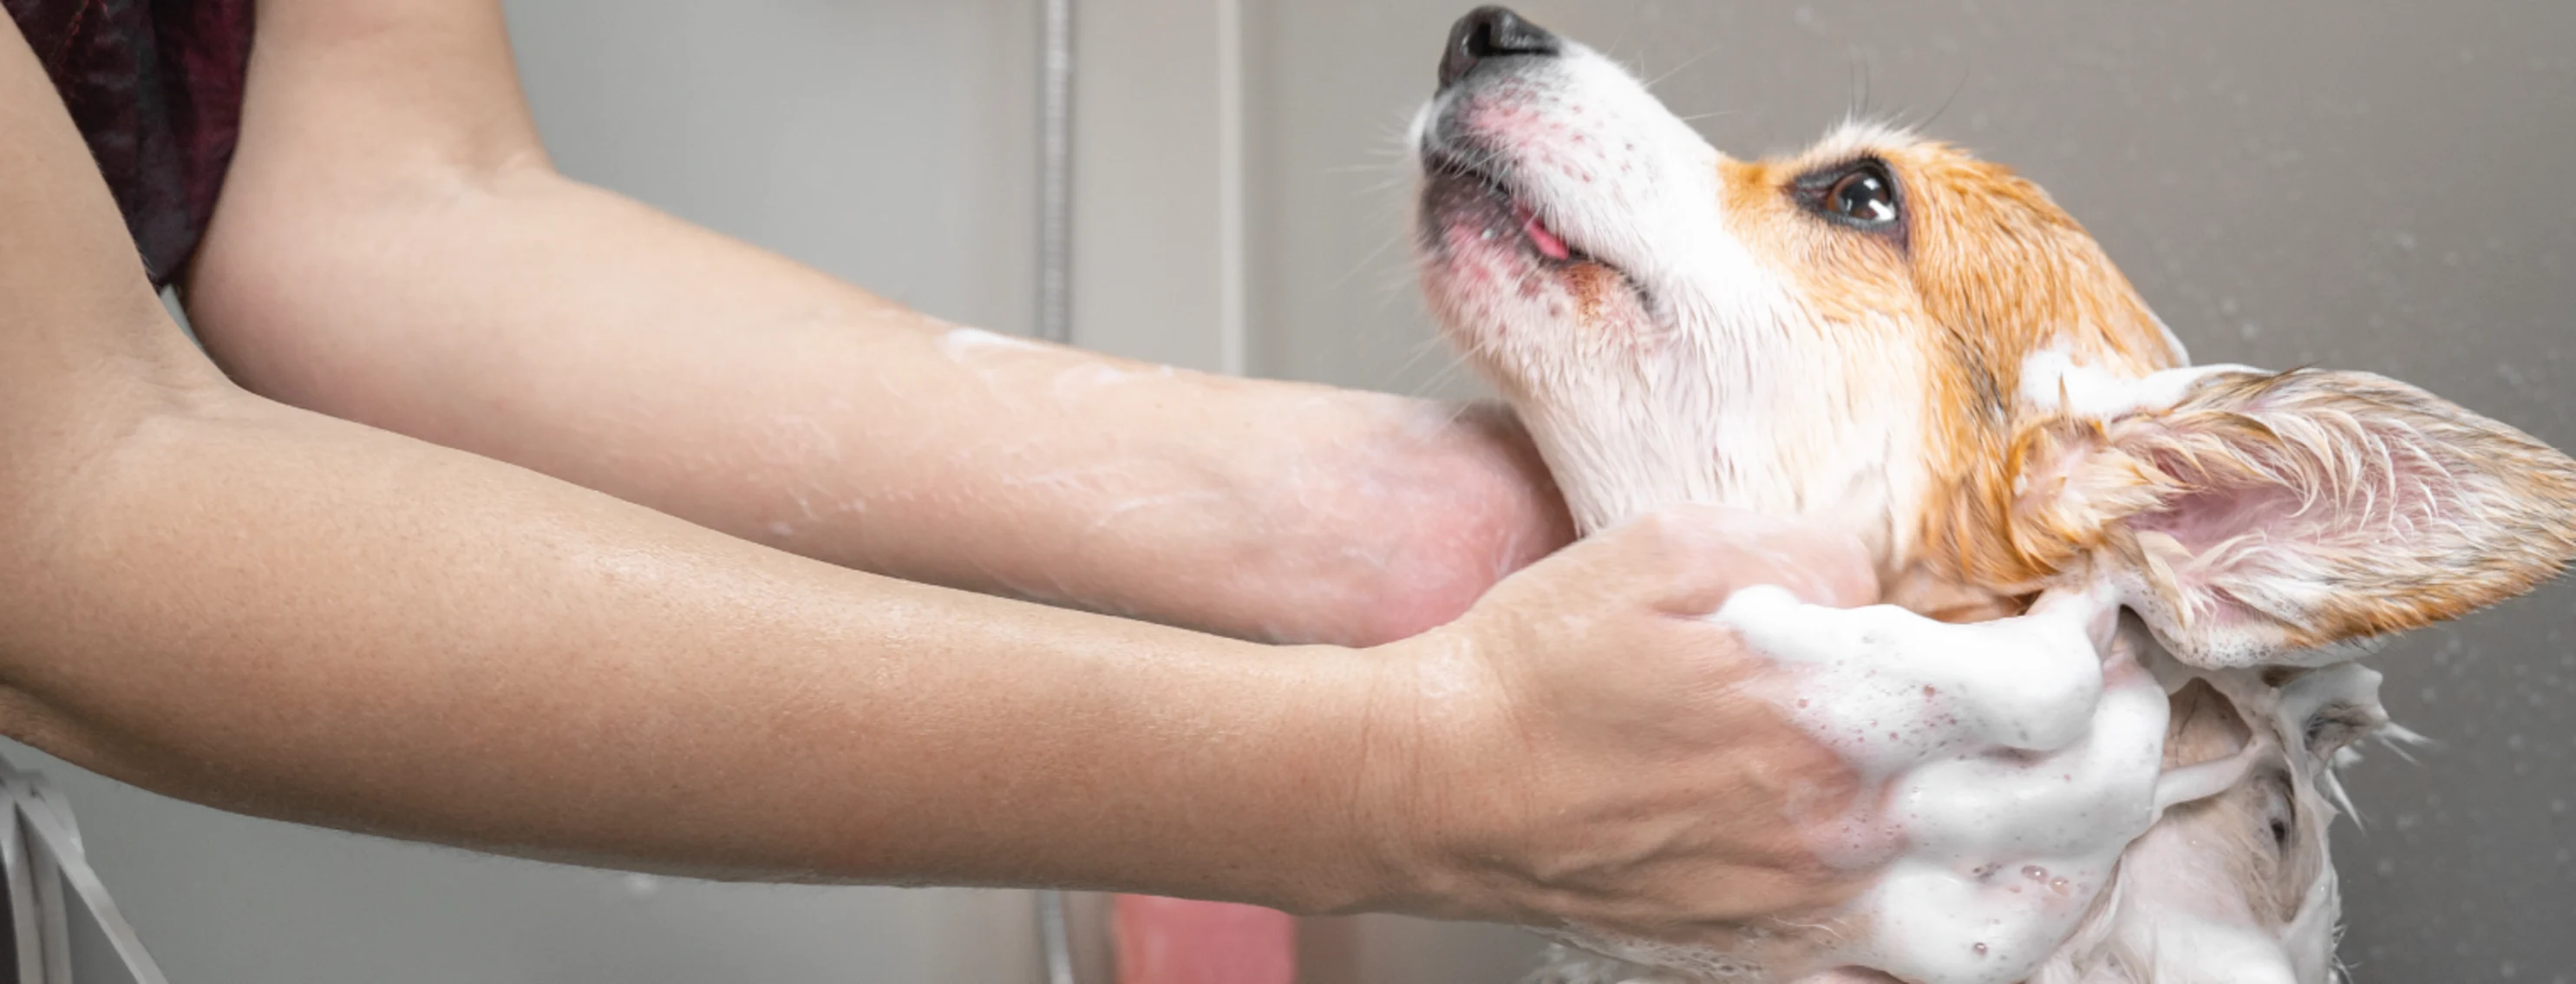 Dog getting bath from groomer